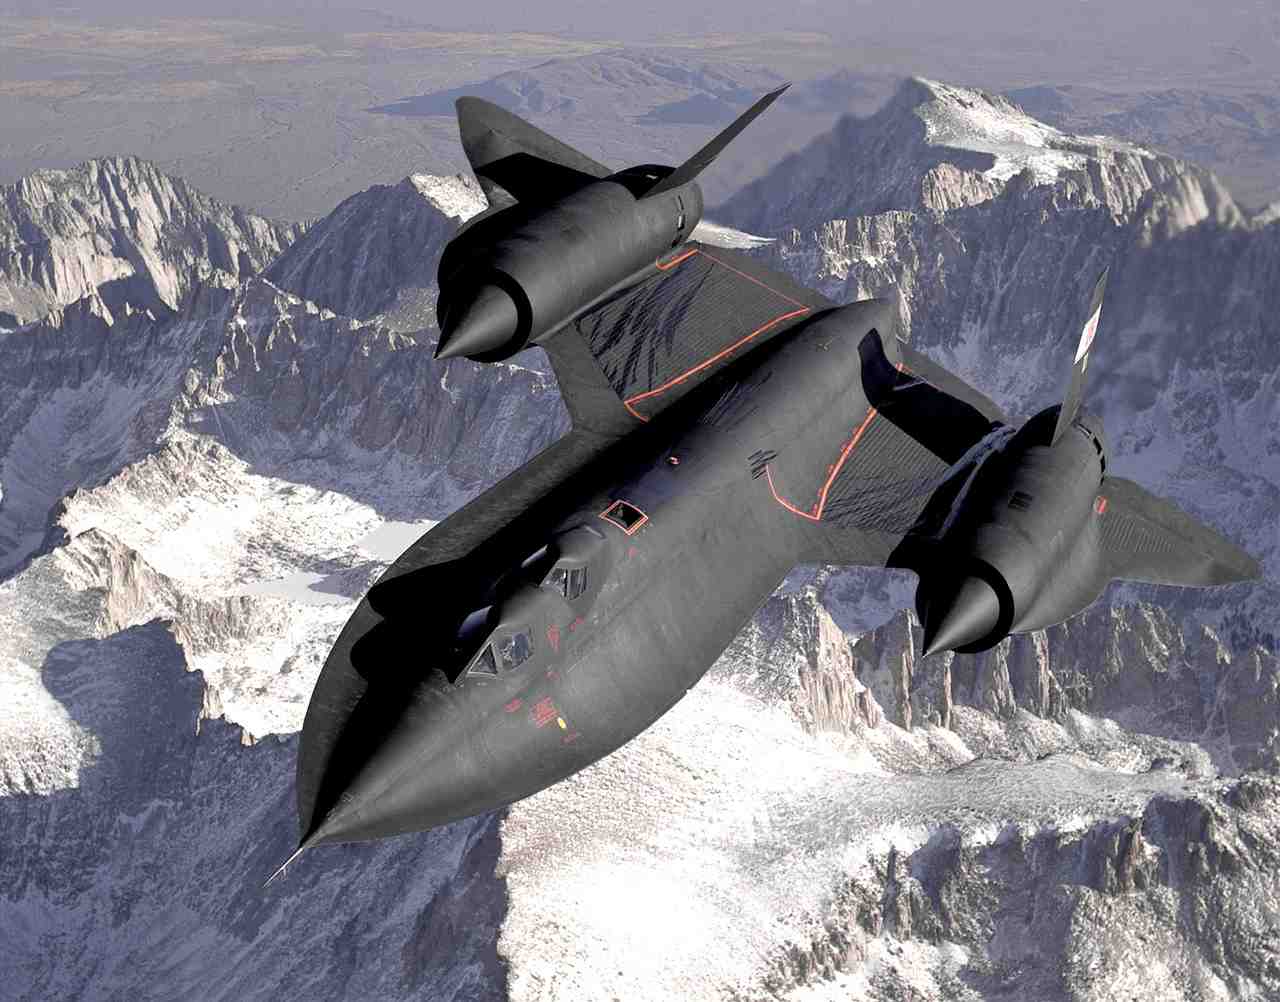 chasseurs supersoniques, aéronefs, jet